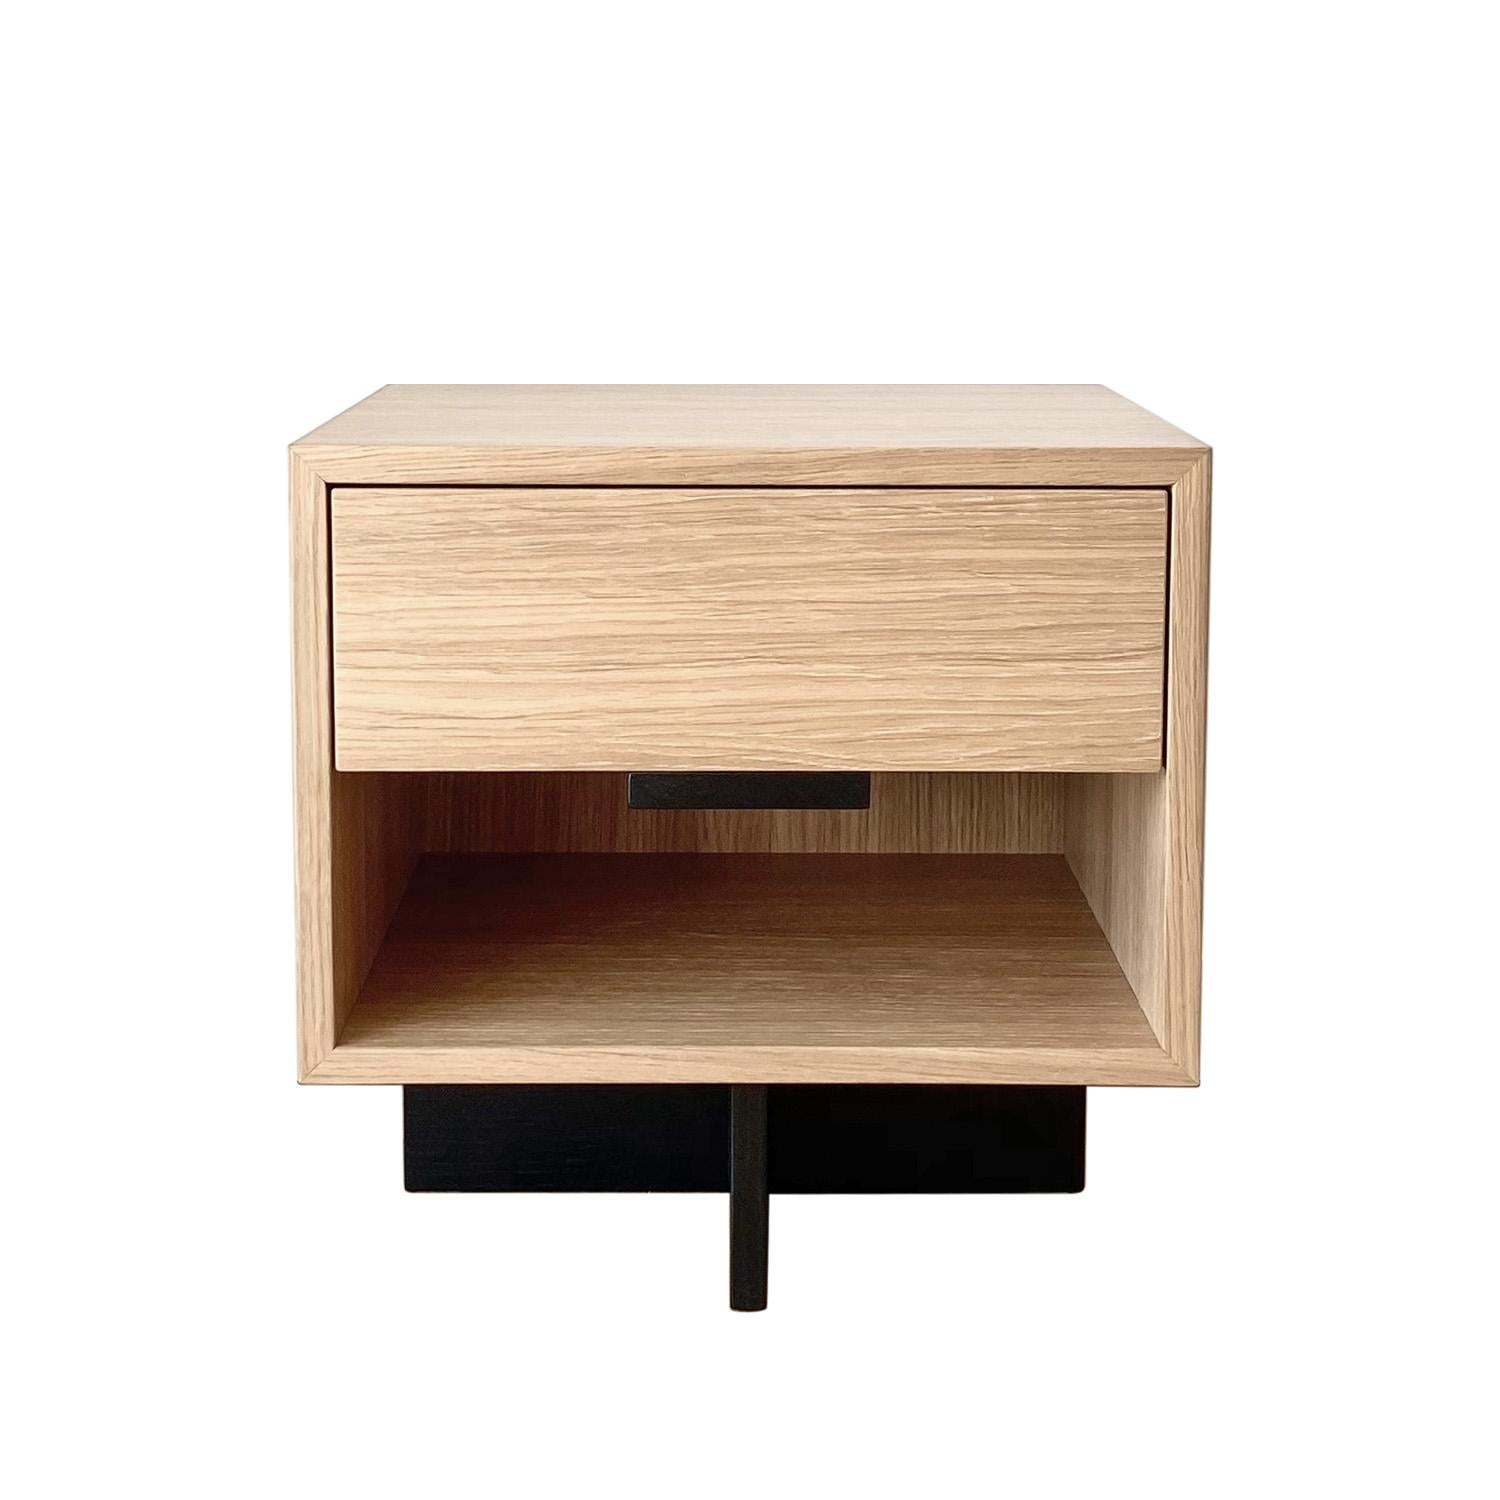 Der Nachttisch Kaid ist ein funktionelles und auffälliges Möbelstück, das Ihrem Wohnbereich einen modernen und einzigartigen Touch verleiht.

Der Kontrast zwischen dem massiven, rechteckigen Aufbewahrungselement und dem schmalen, geradlinigen